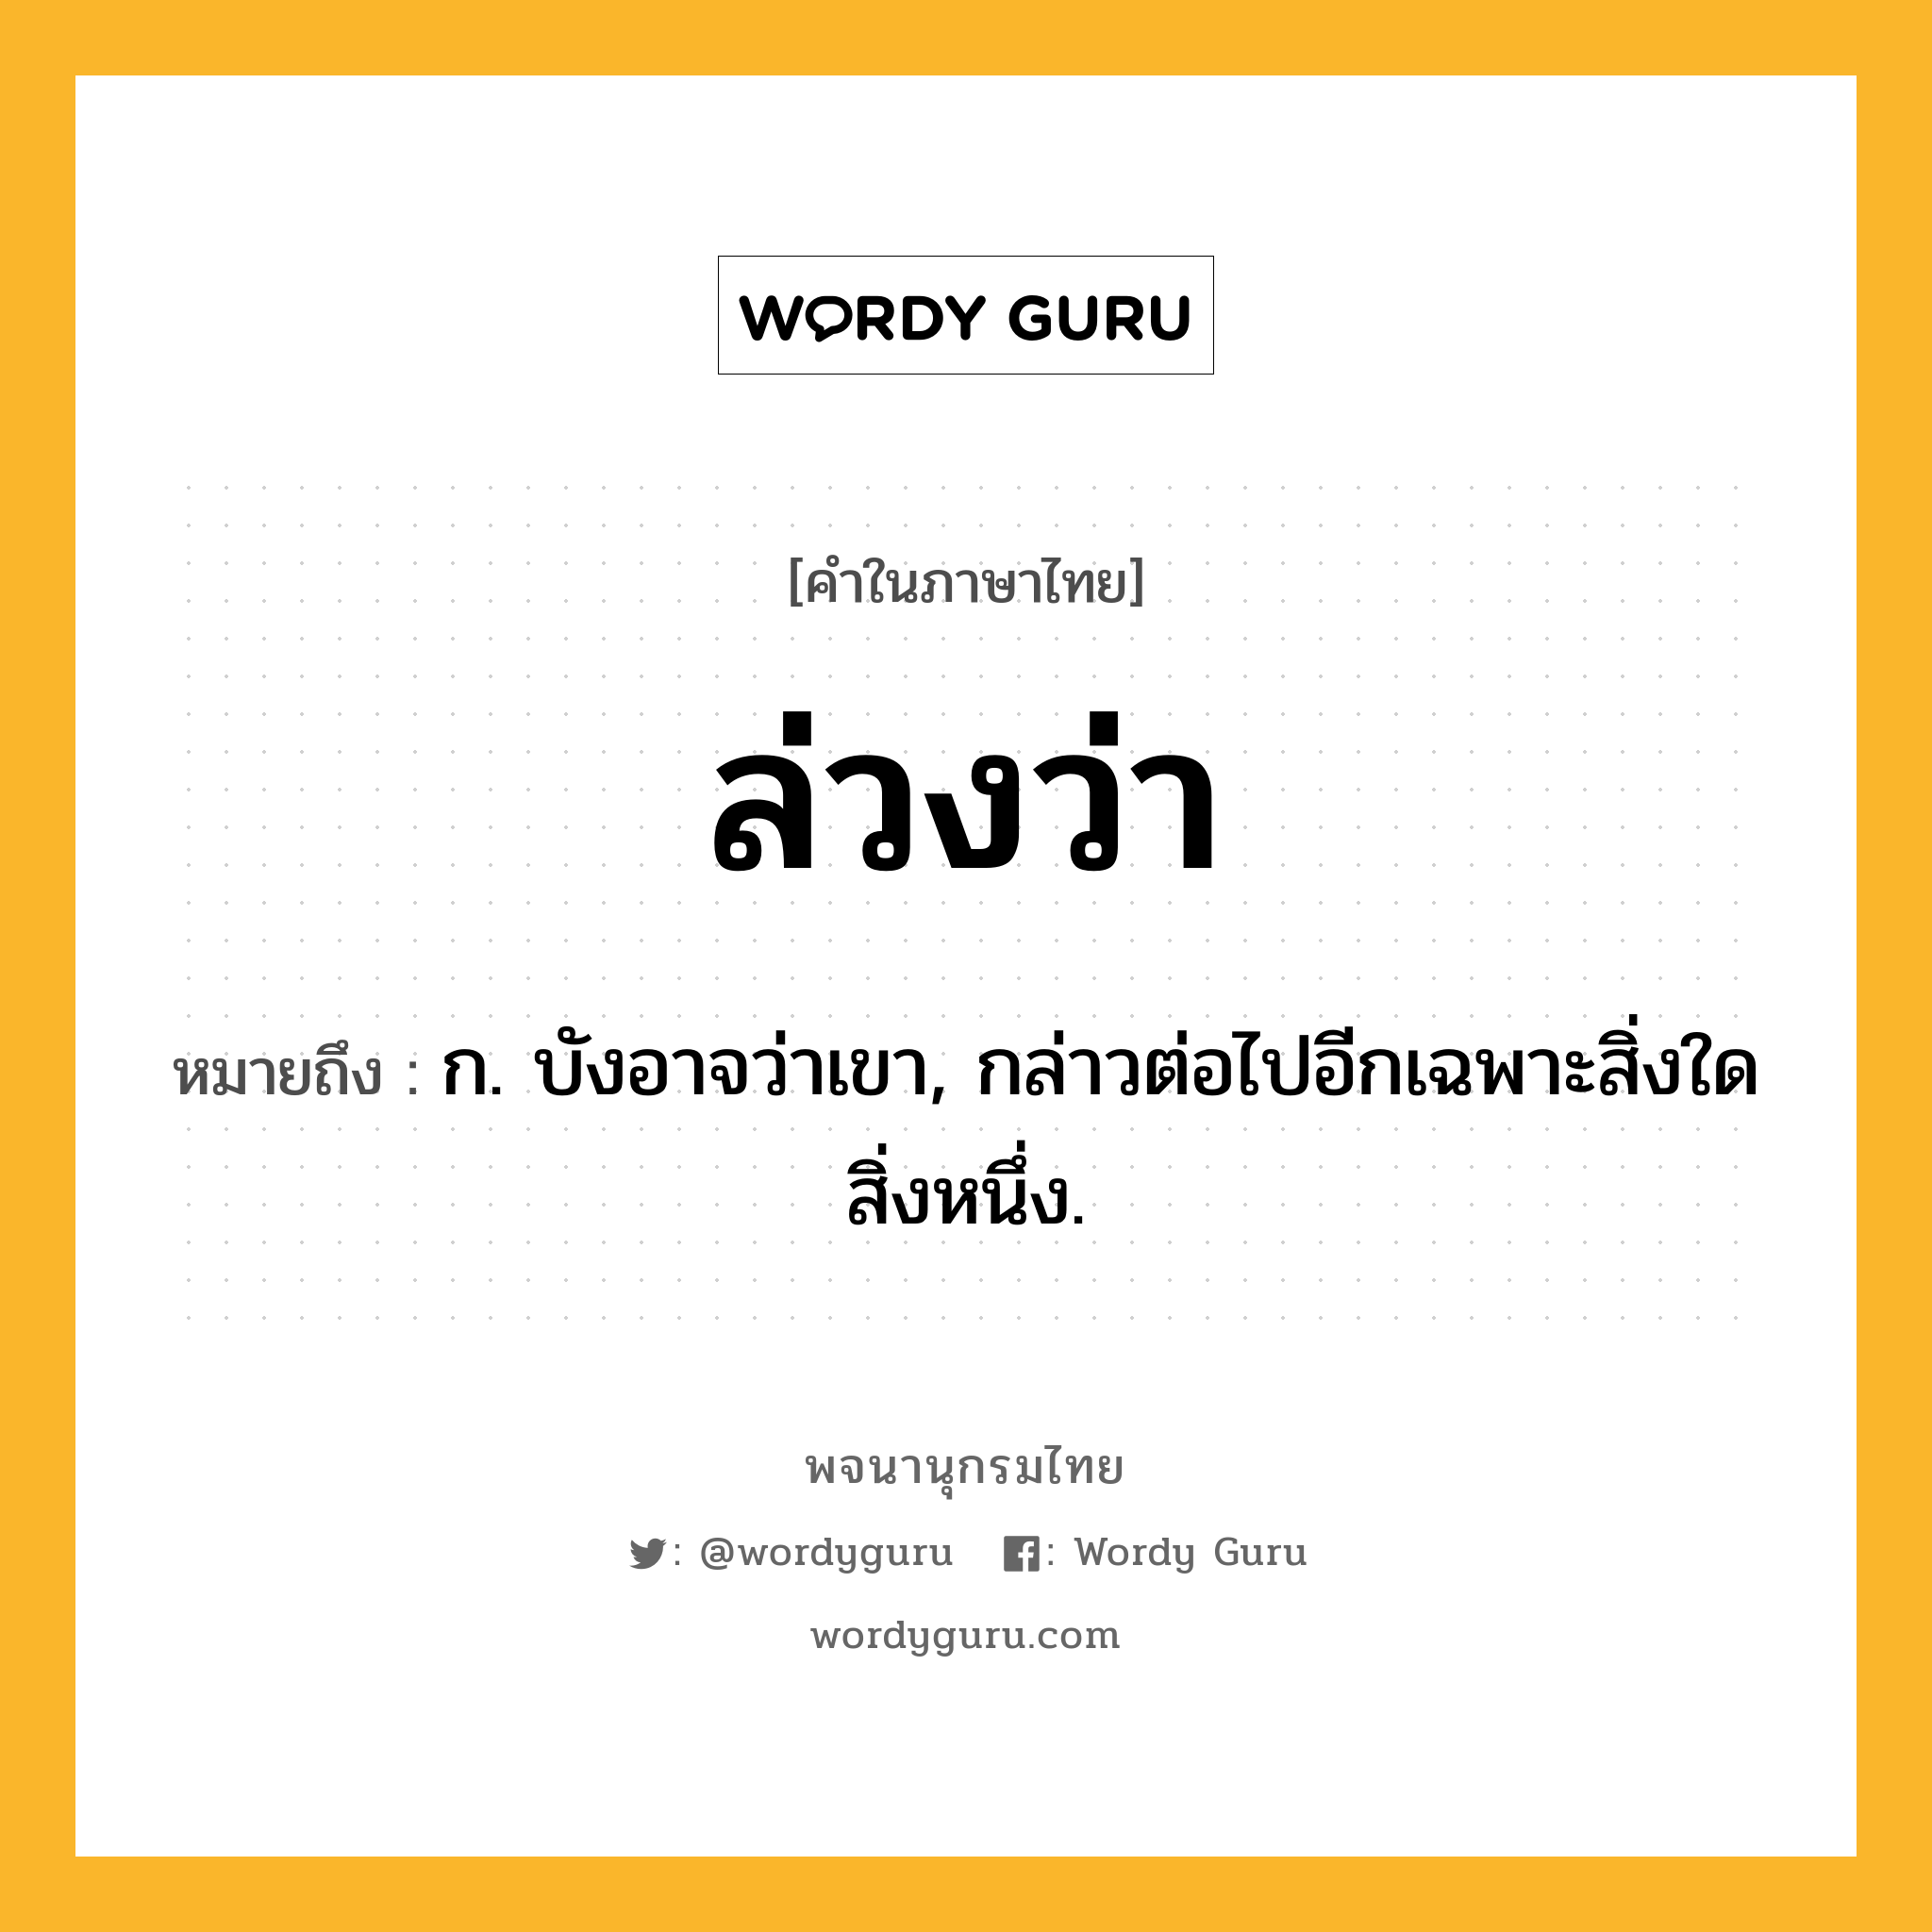 ล่วงว่า ความหมาย หมายถึงอะไร?, คำในภาษาไทย ล่วงว่า หมายถึง ก. บังอาจว่าเขา, กล่าวต่อไปอีกเฉพาะสิ่งใดสิ่งหนึ่ง.